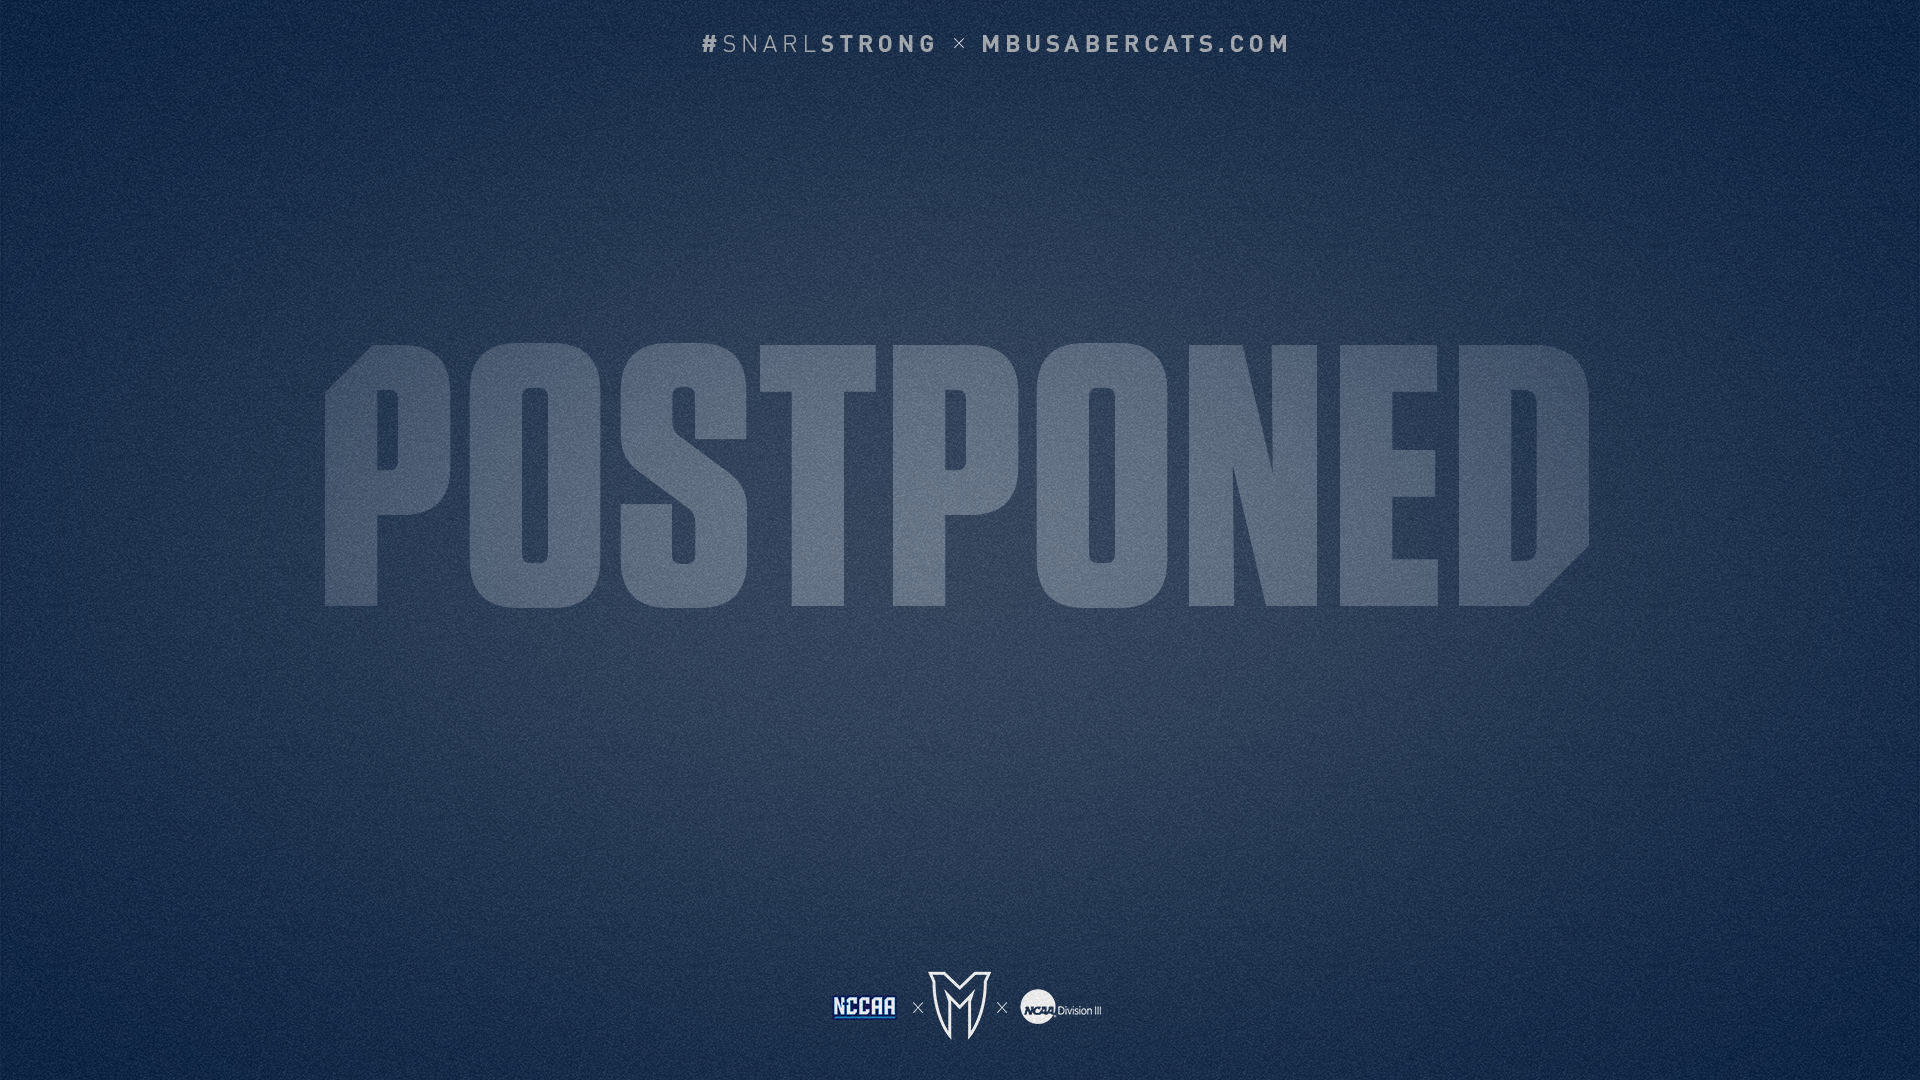 April 17 Baseball Games Postponed